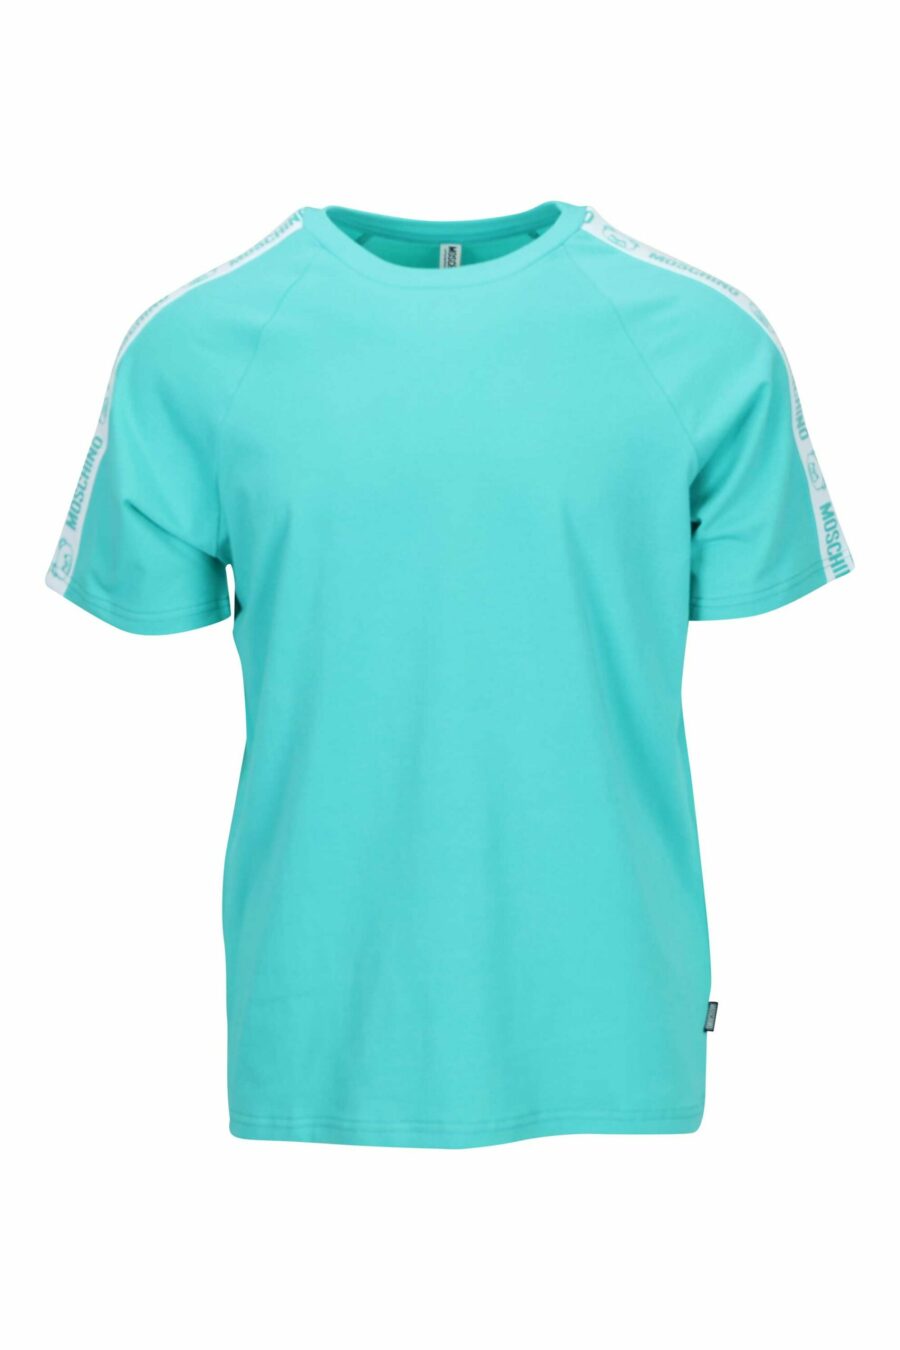 Aquamarine blue T-shirt with bear logo "underbear" on shoulder band - 667113602400 scaled